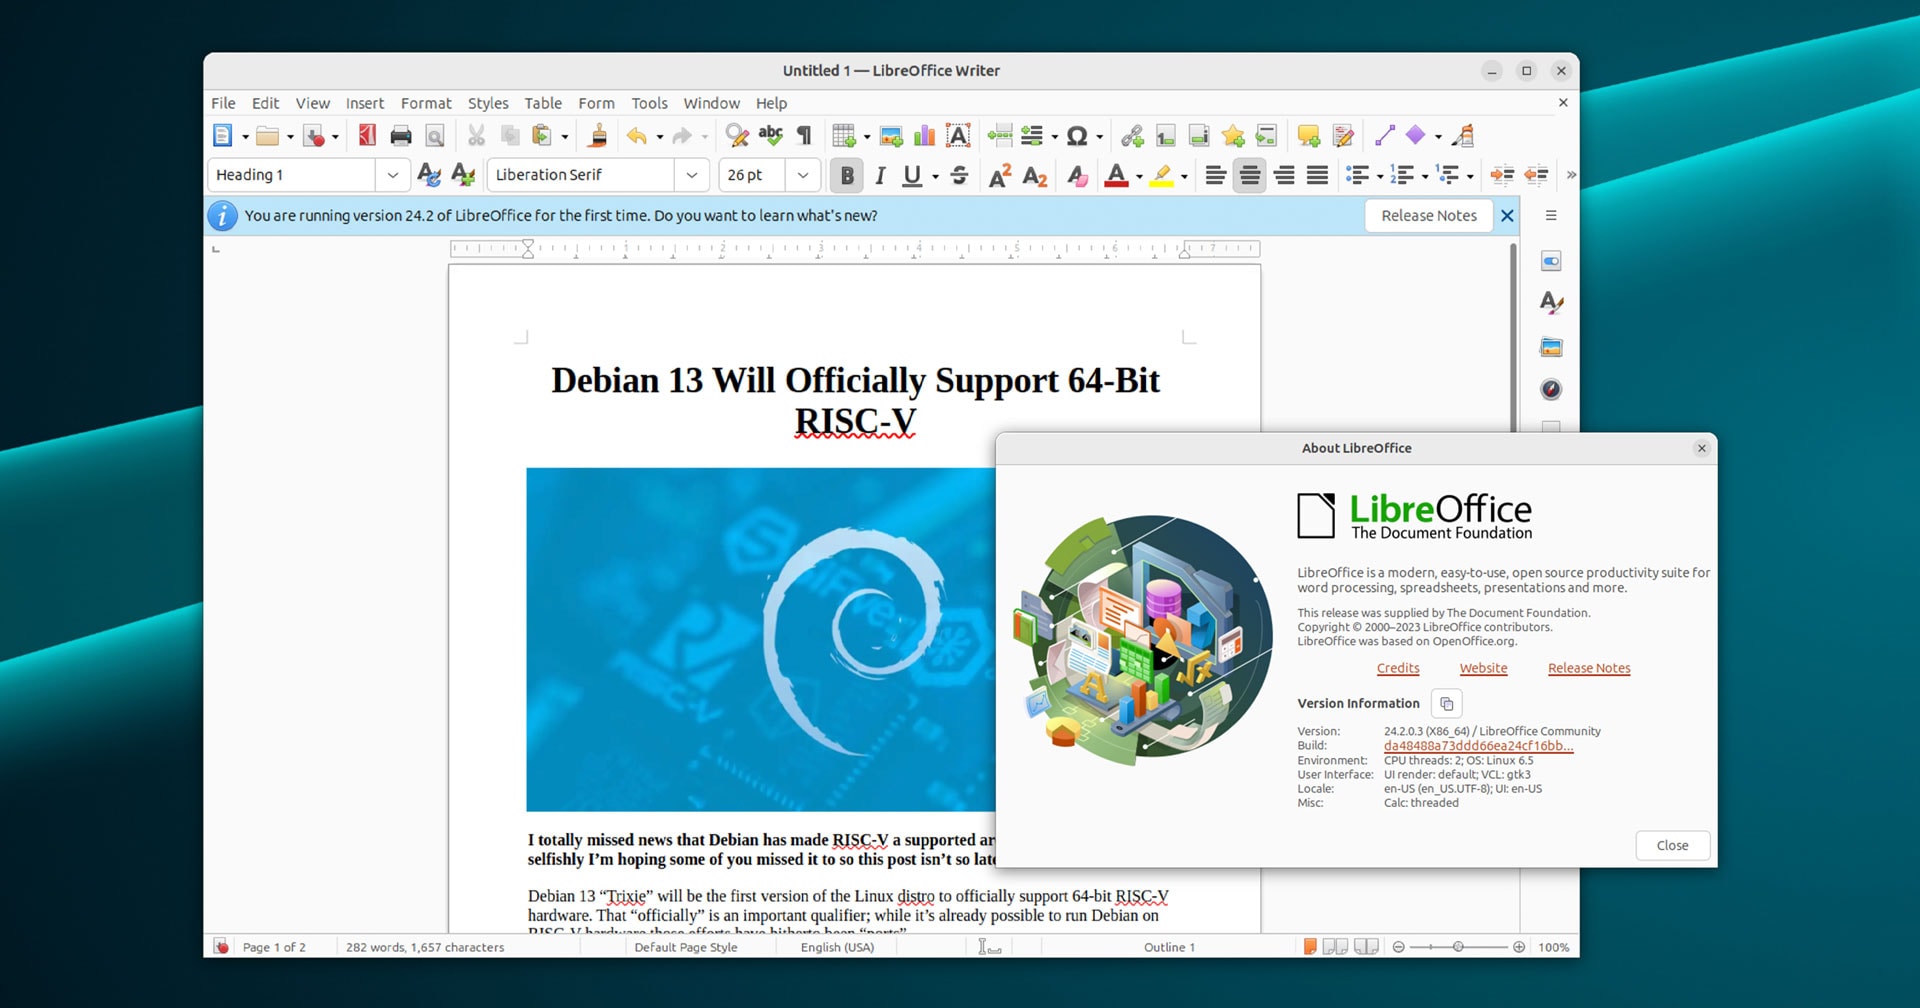 Giới thiệu chung về LibreOffice